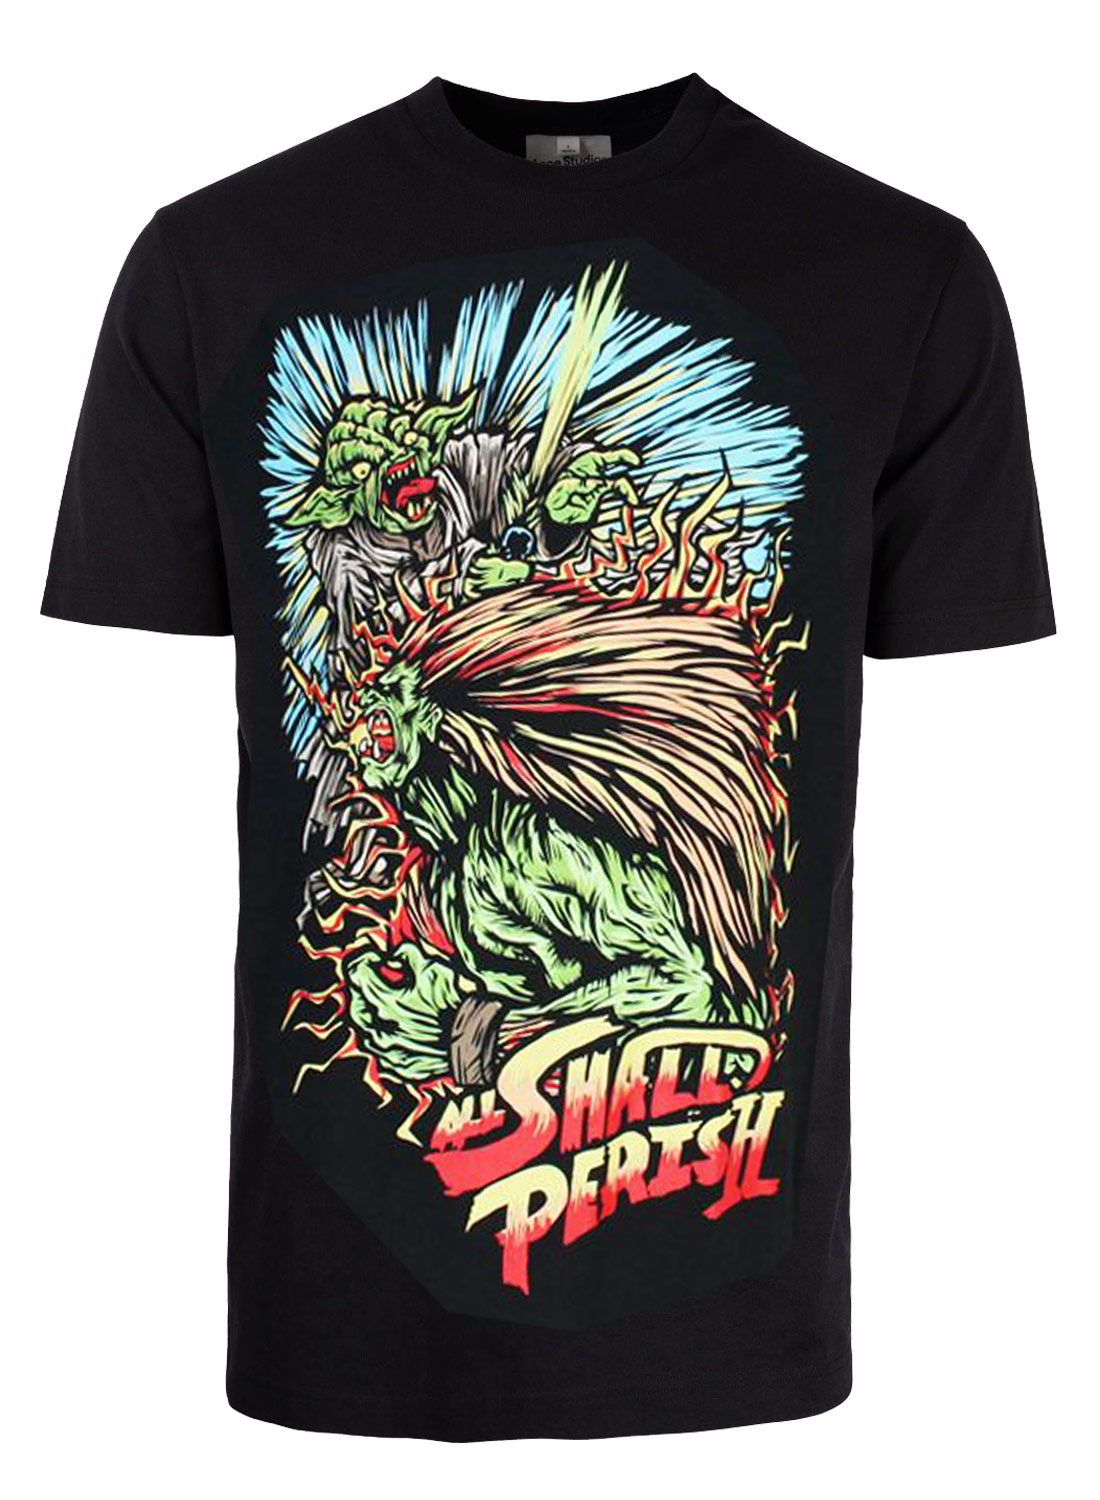 All Shall Perish Street Fighter T-Shirt